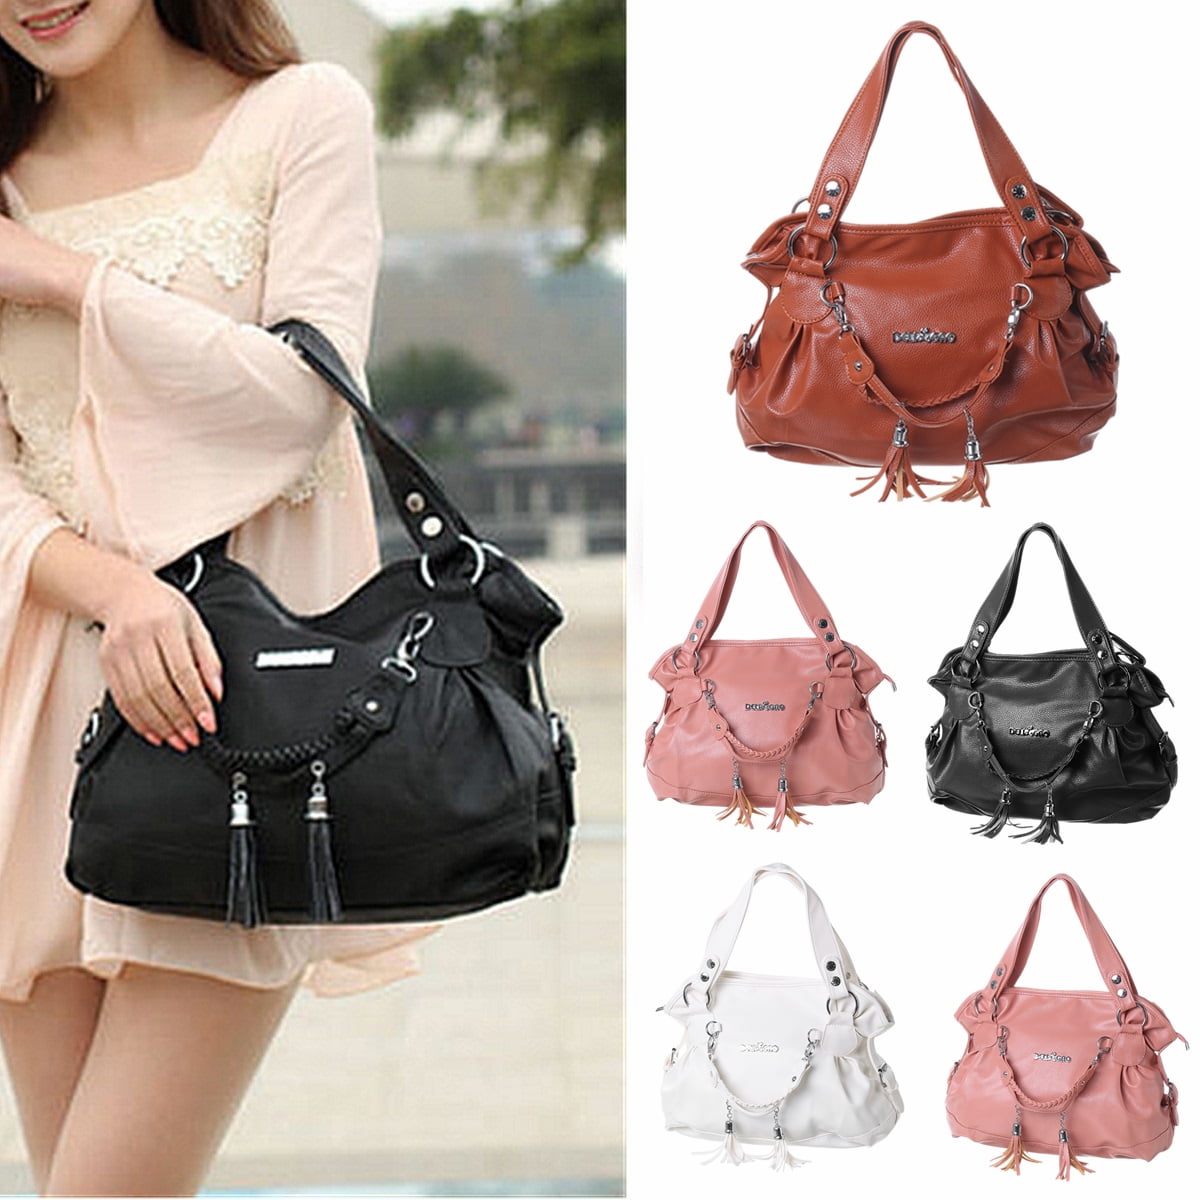 Women Large Mixed Color Leather Fringe Shoulder Bag Travel Messenger Bag Handbag 